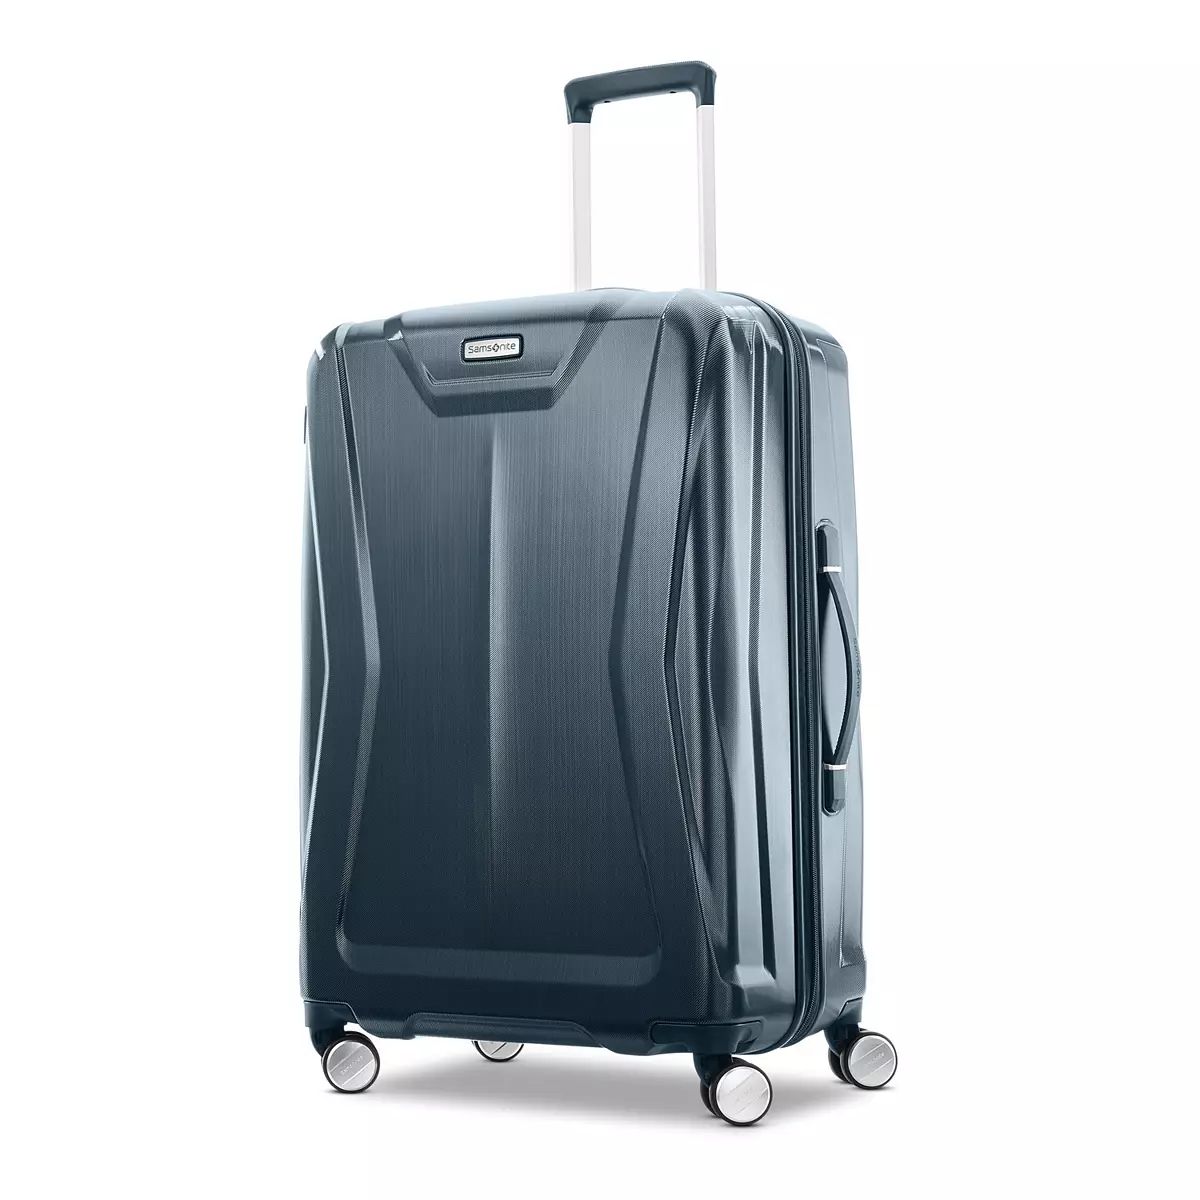 Samsonite Lite Lift 3.0 Hardside Spinner Luggage | Kohl's